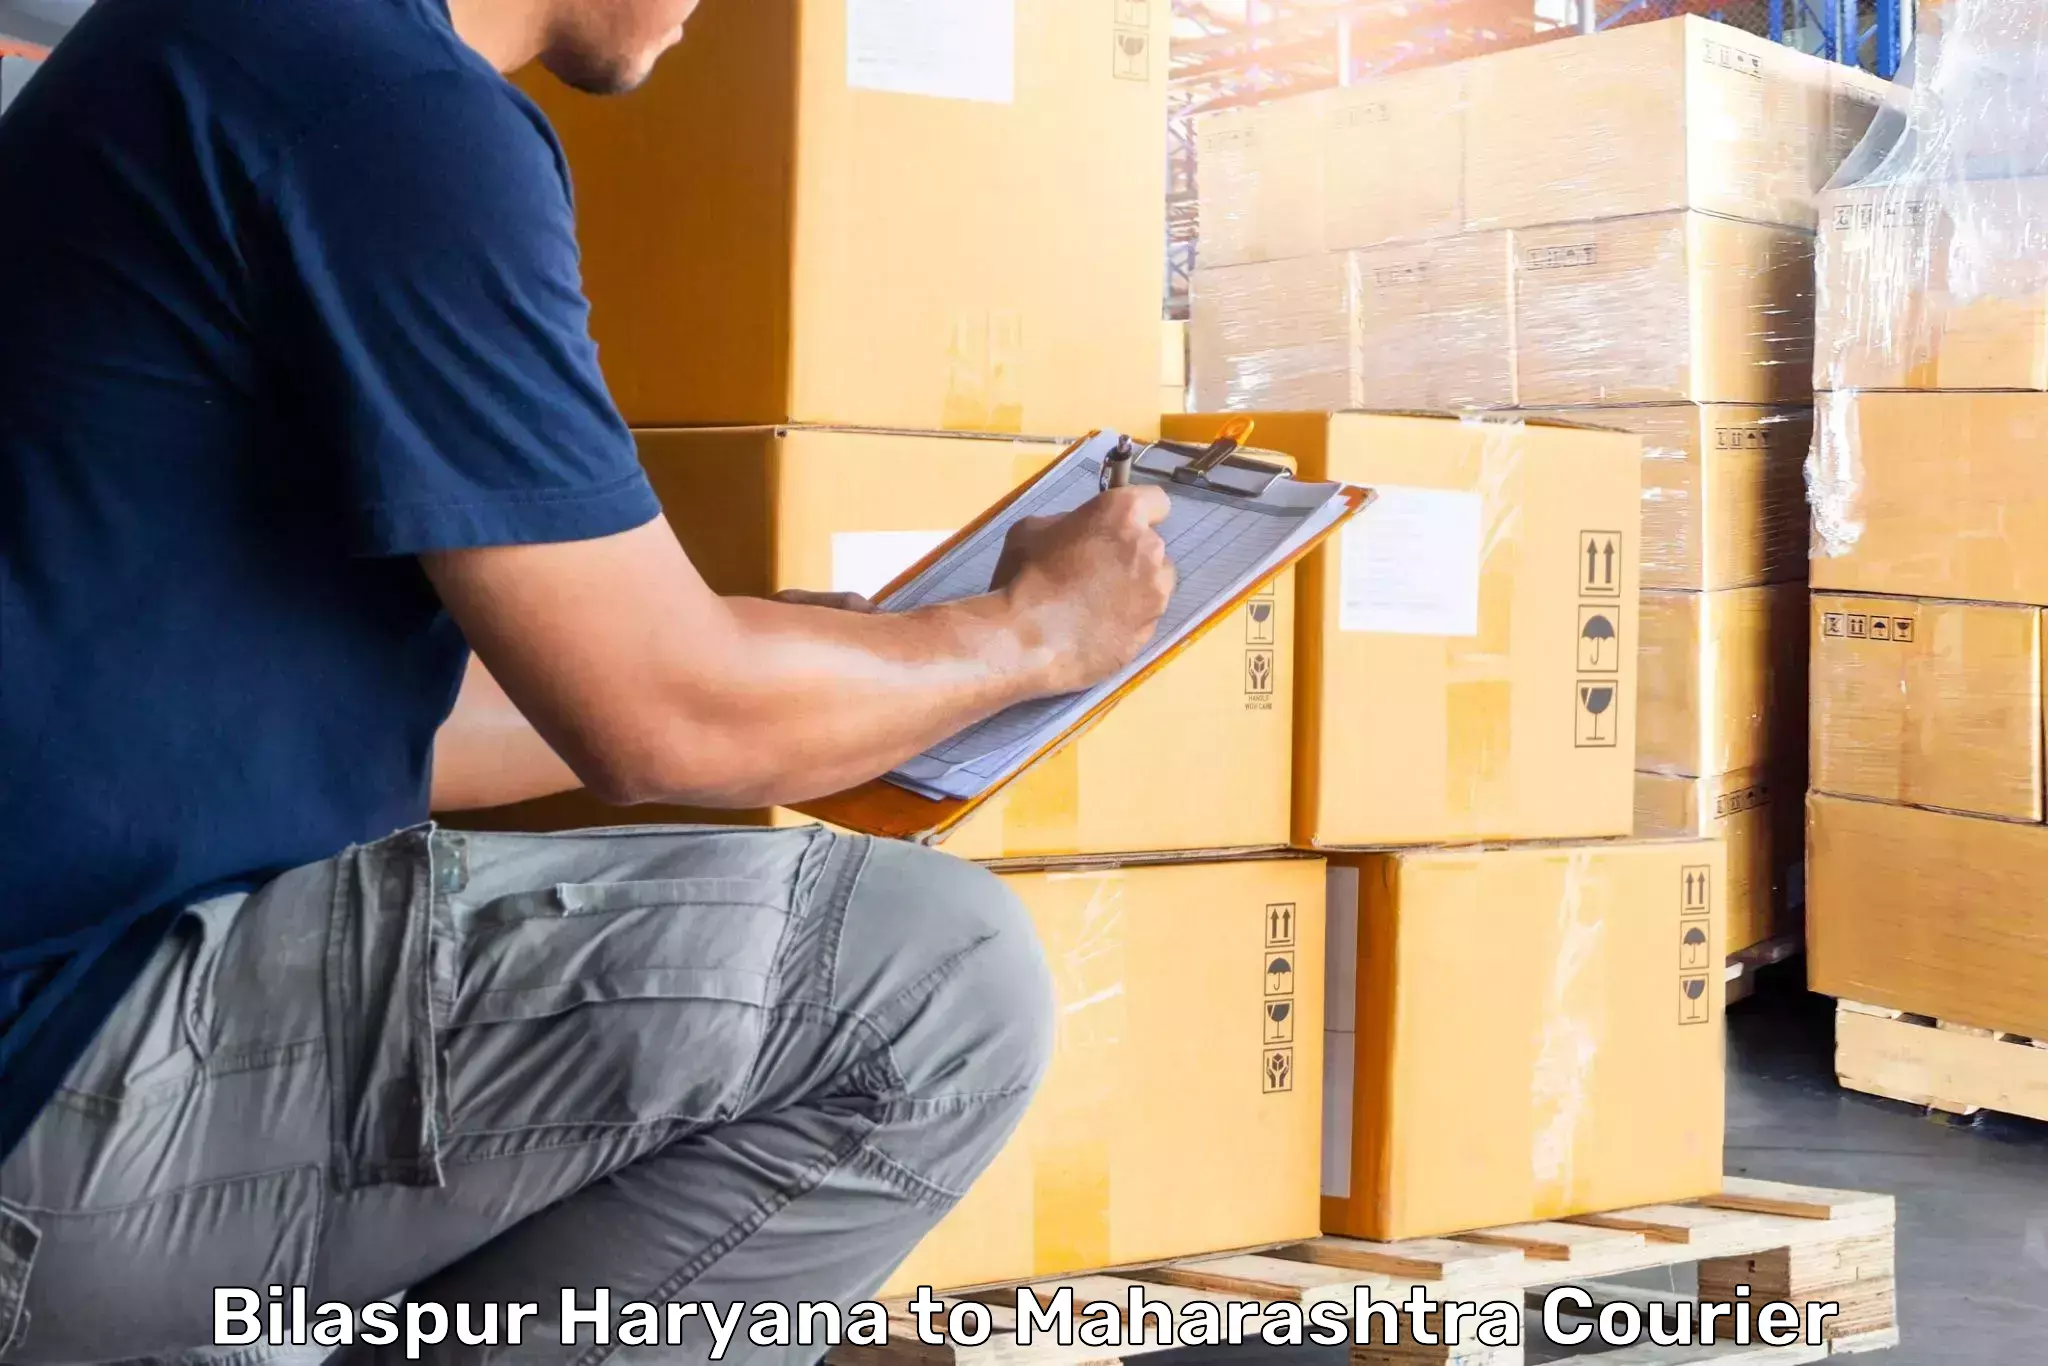 Baggage transport logistics Bilaspur Haryana to Hinganghat